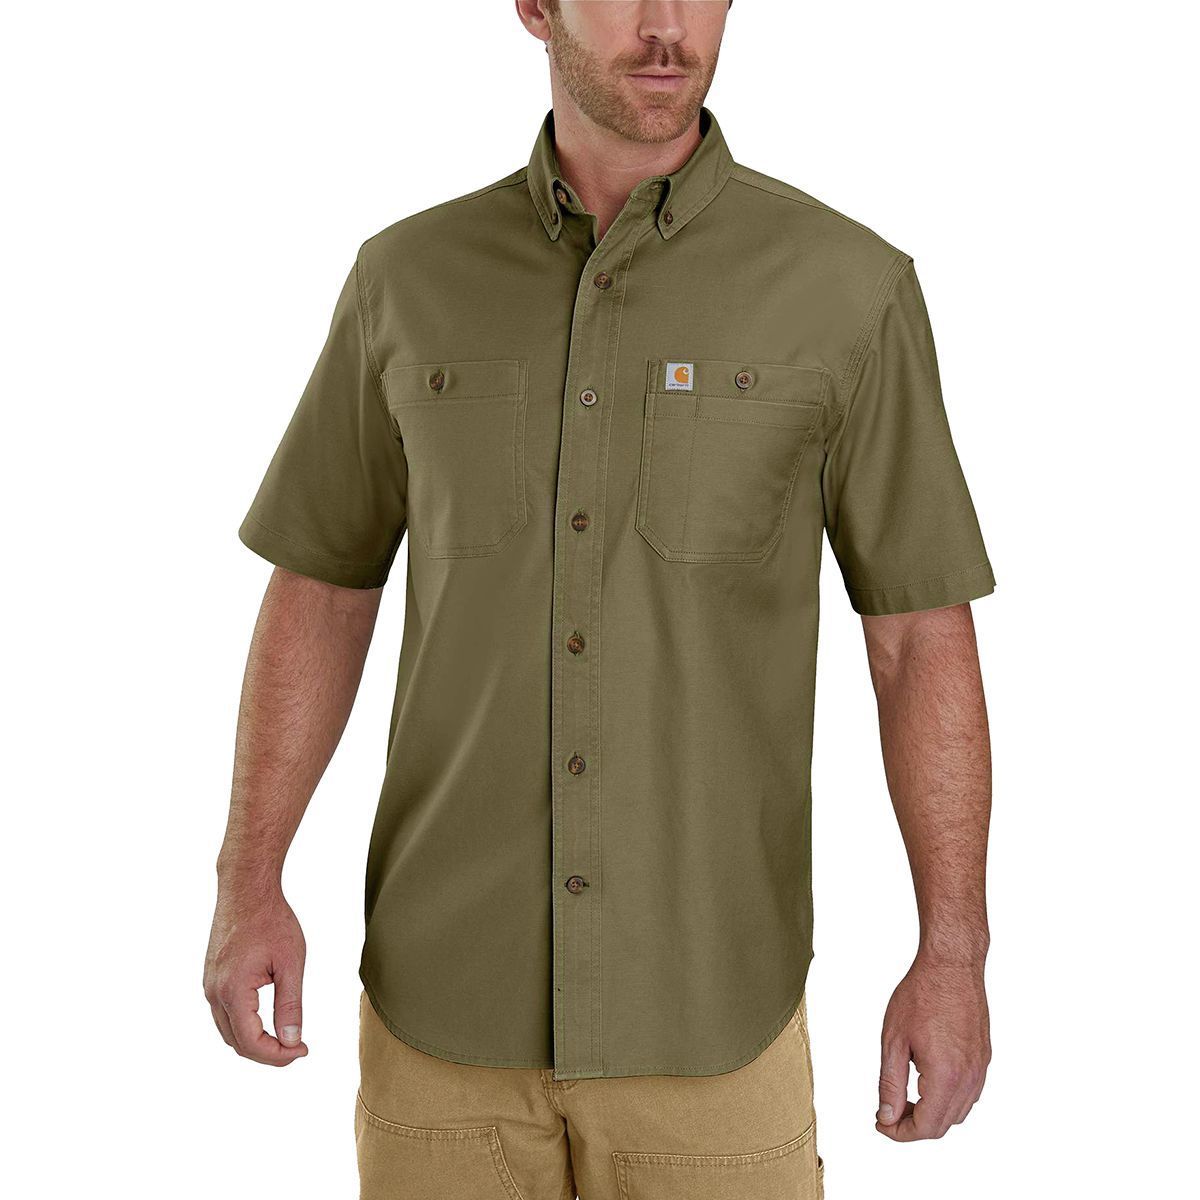 Rugged Flex Rigby Short-Sleeve Work Shirt - Men